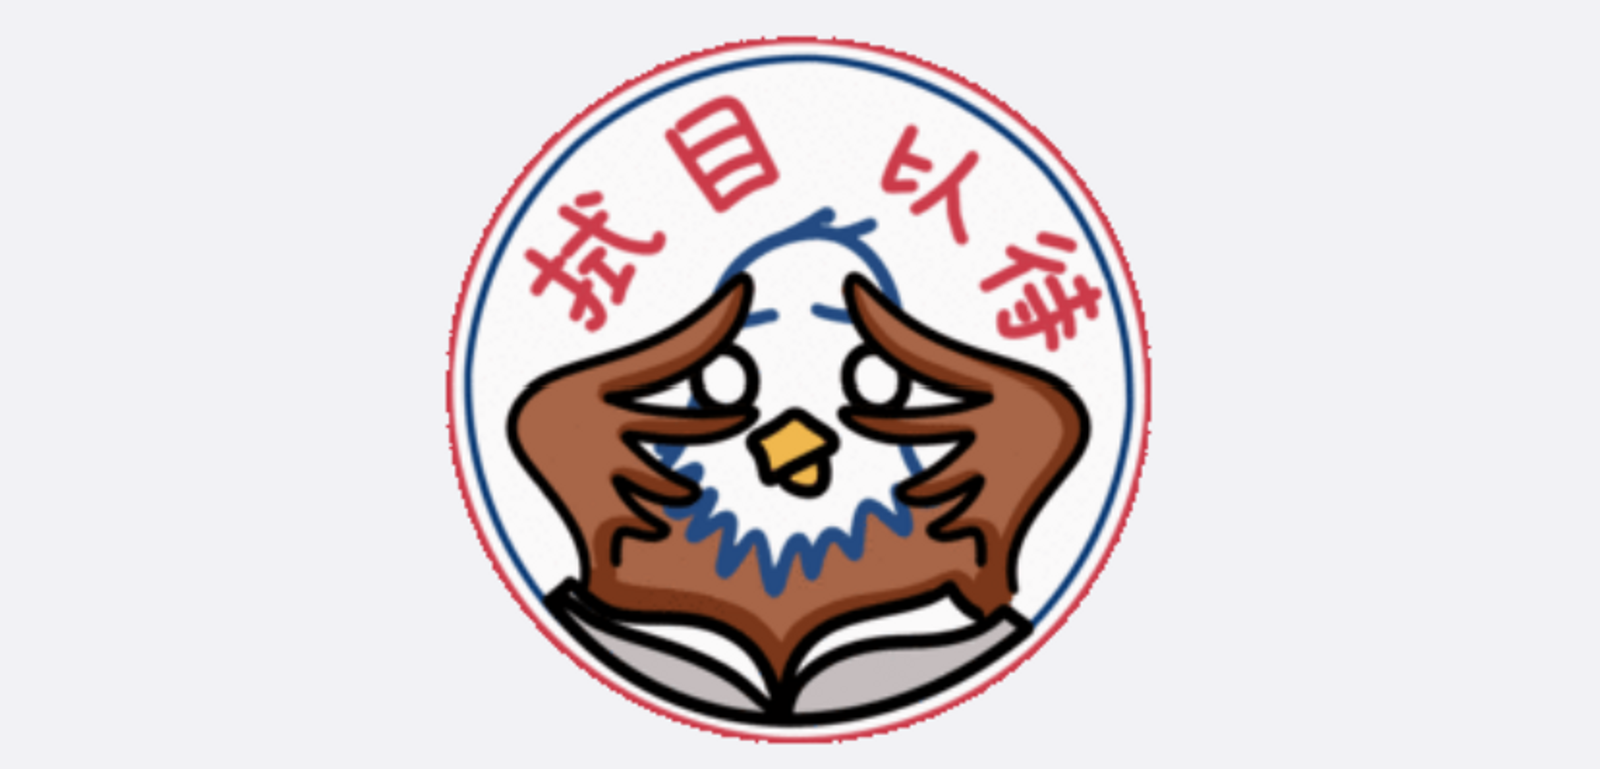 US Embassy WeChat emoji